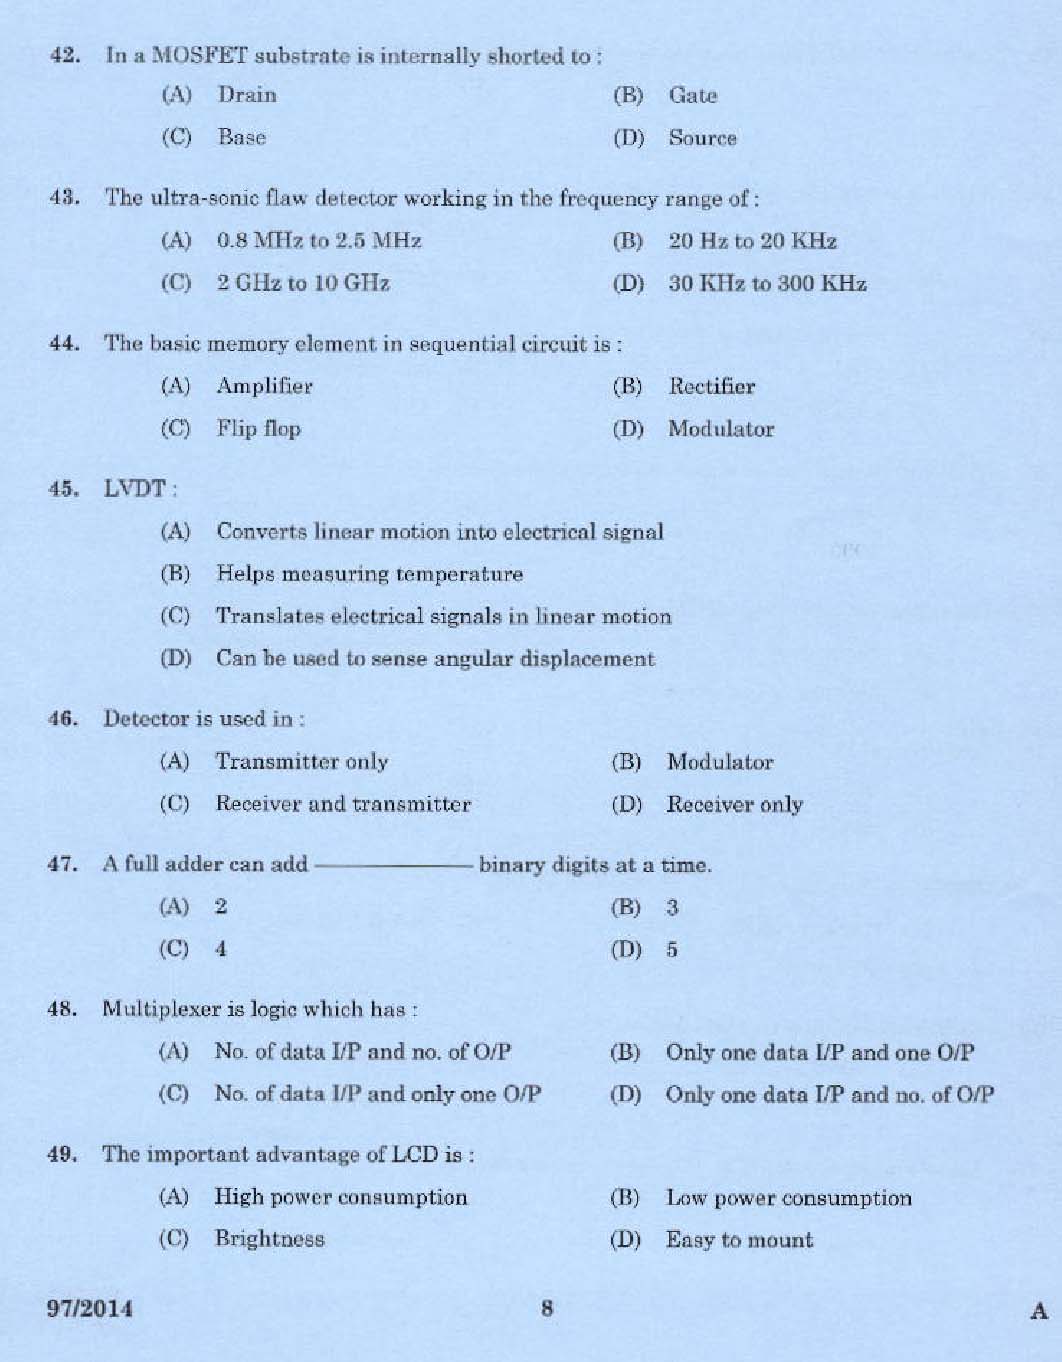 Kerala PSC Junior Instructor Exam Question Paper Code 972014 6